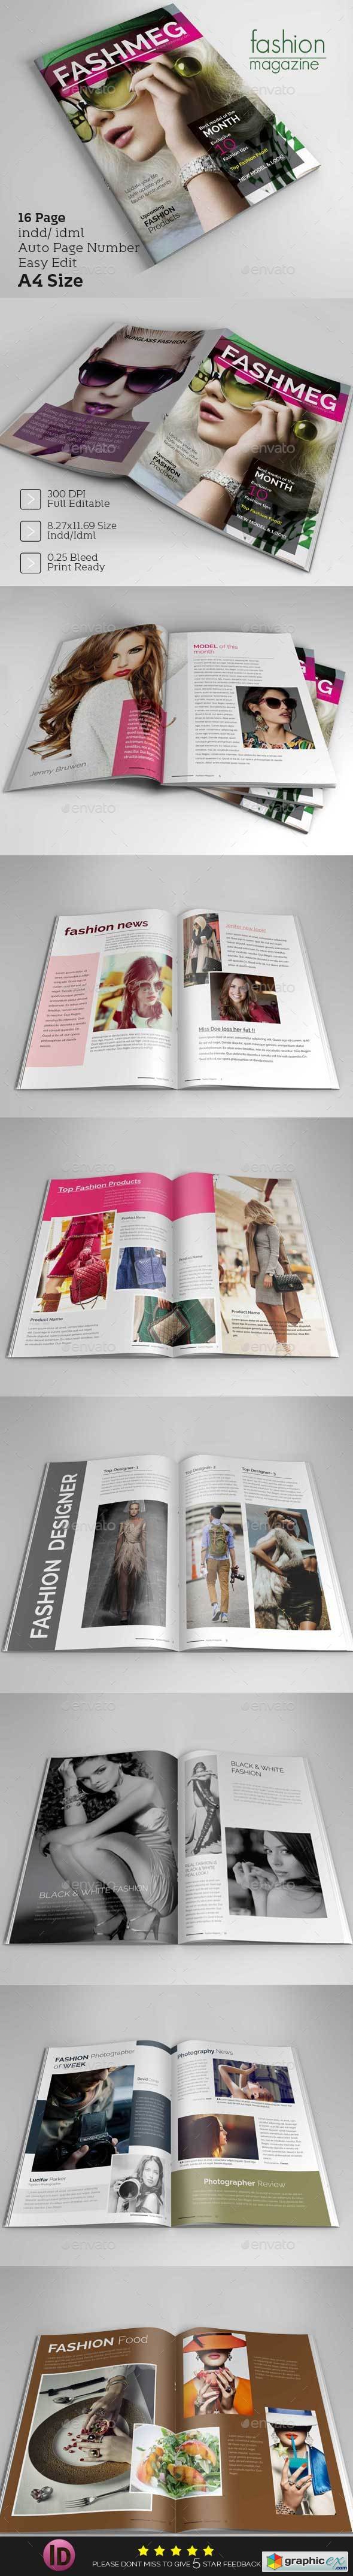 Fashion Magazine Design Template